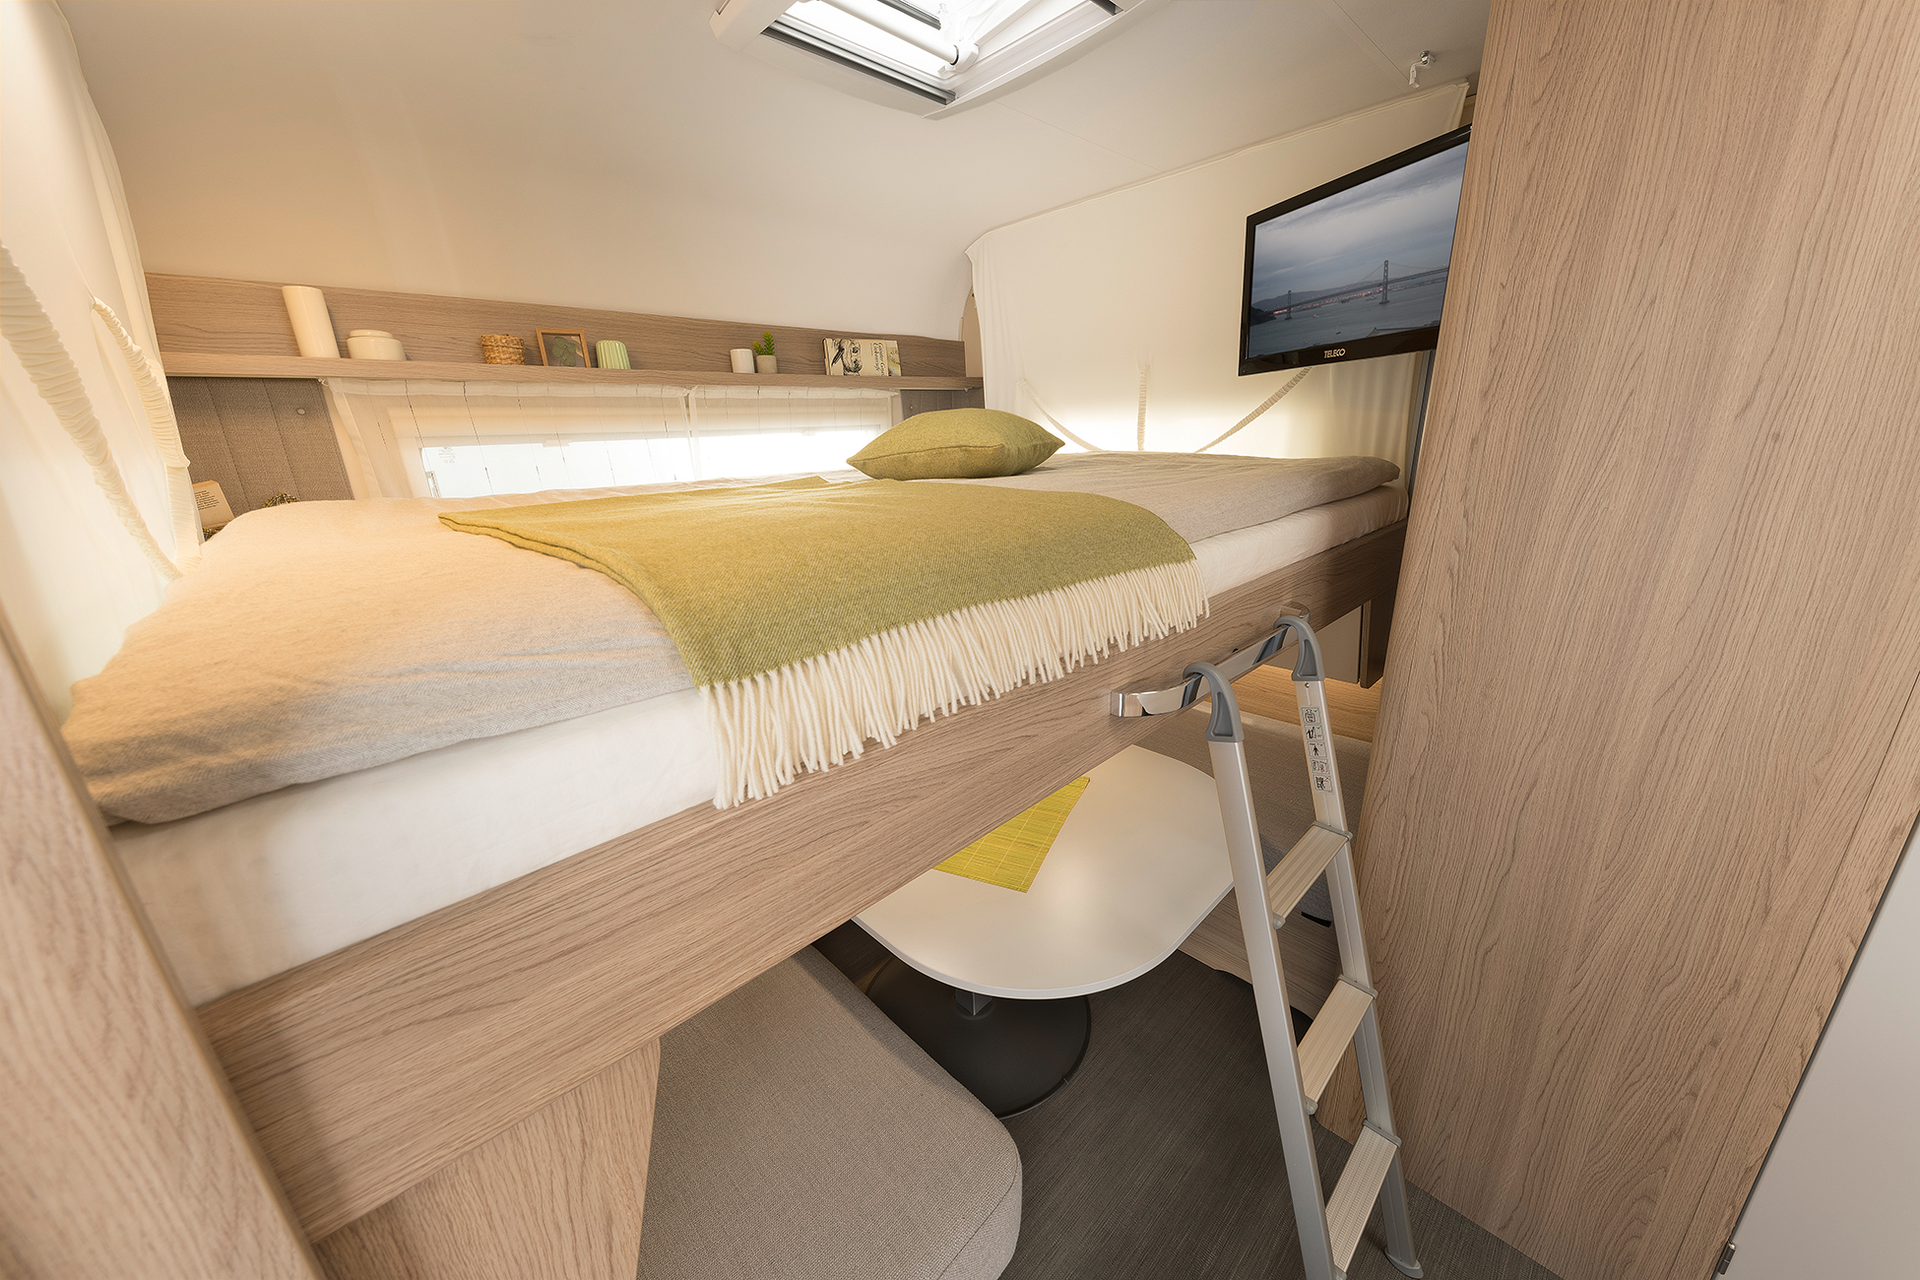 W trasie we dwoje lub z przyjaciółmi: umożliwia to praktyczne łóżko podnoszone nad kanapą • 530 ER | Skagen